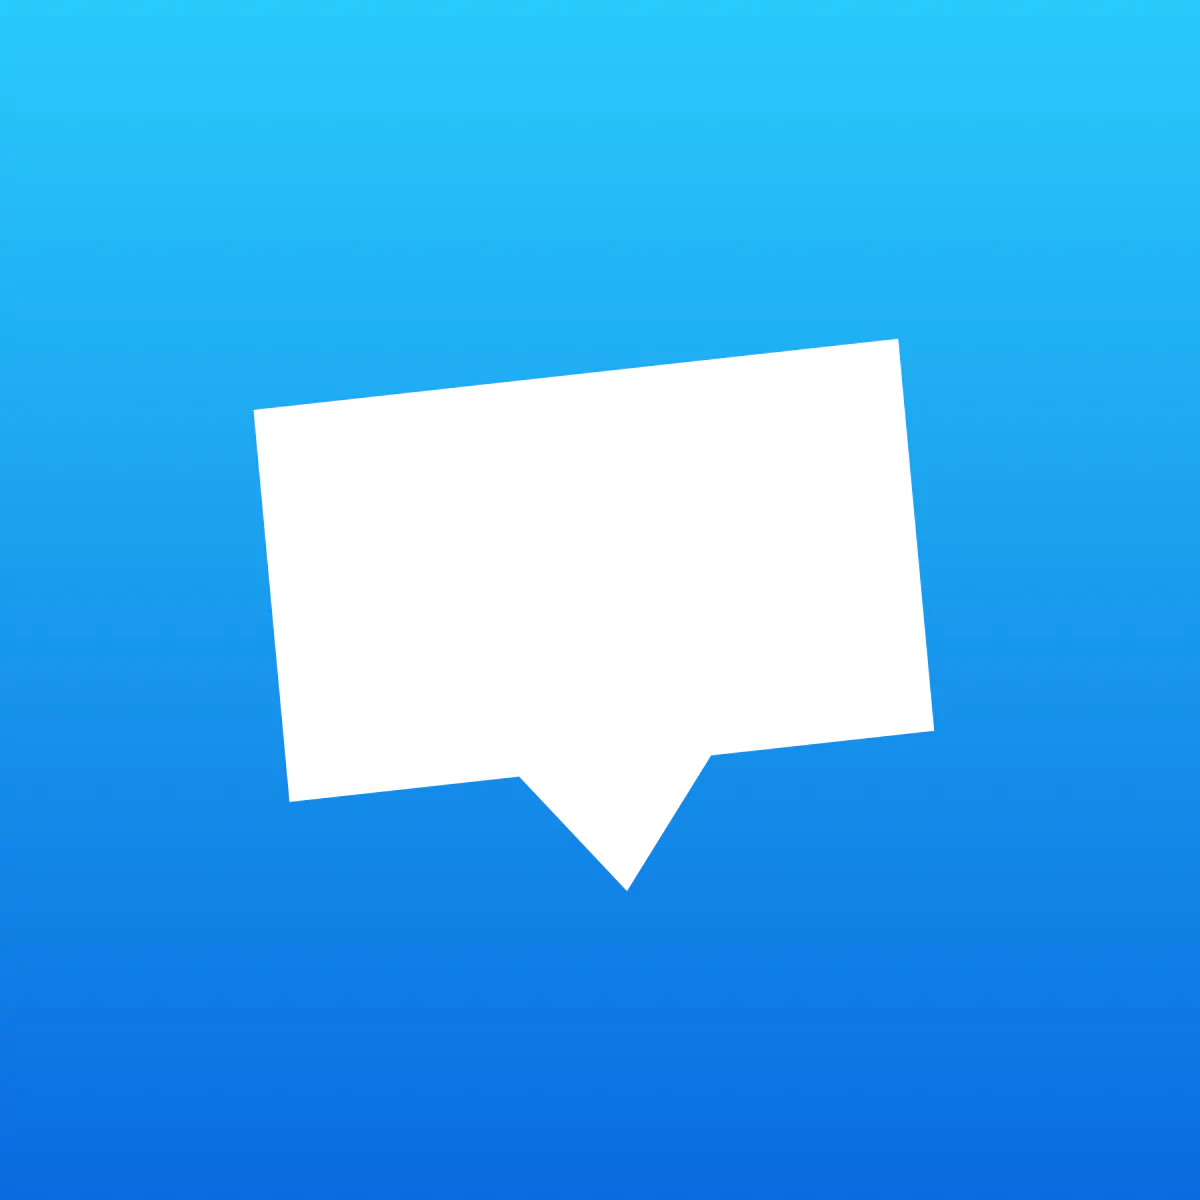 Crisp ‑ Helpdesk & Live Chat